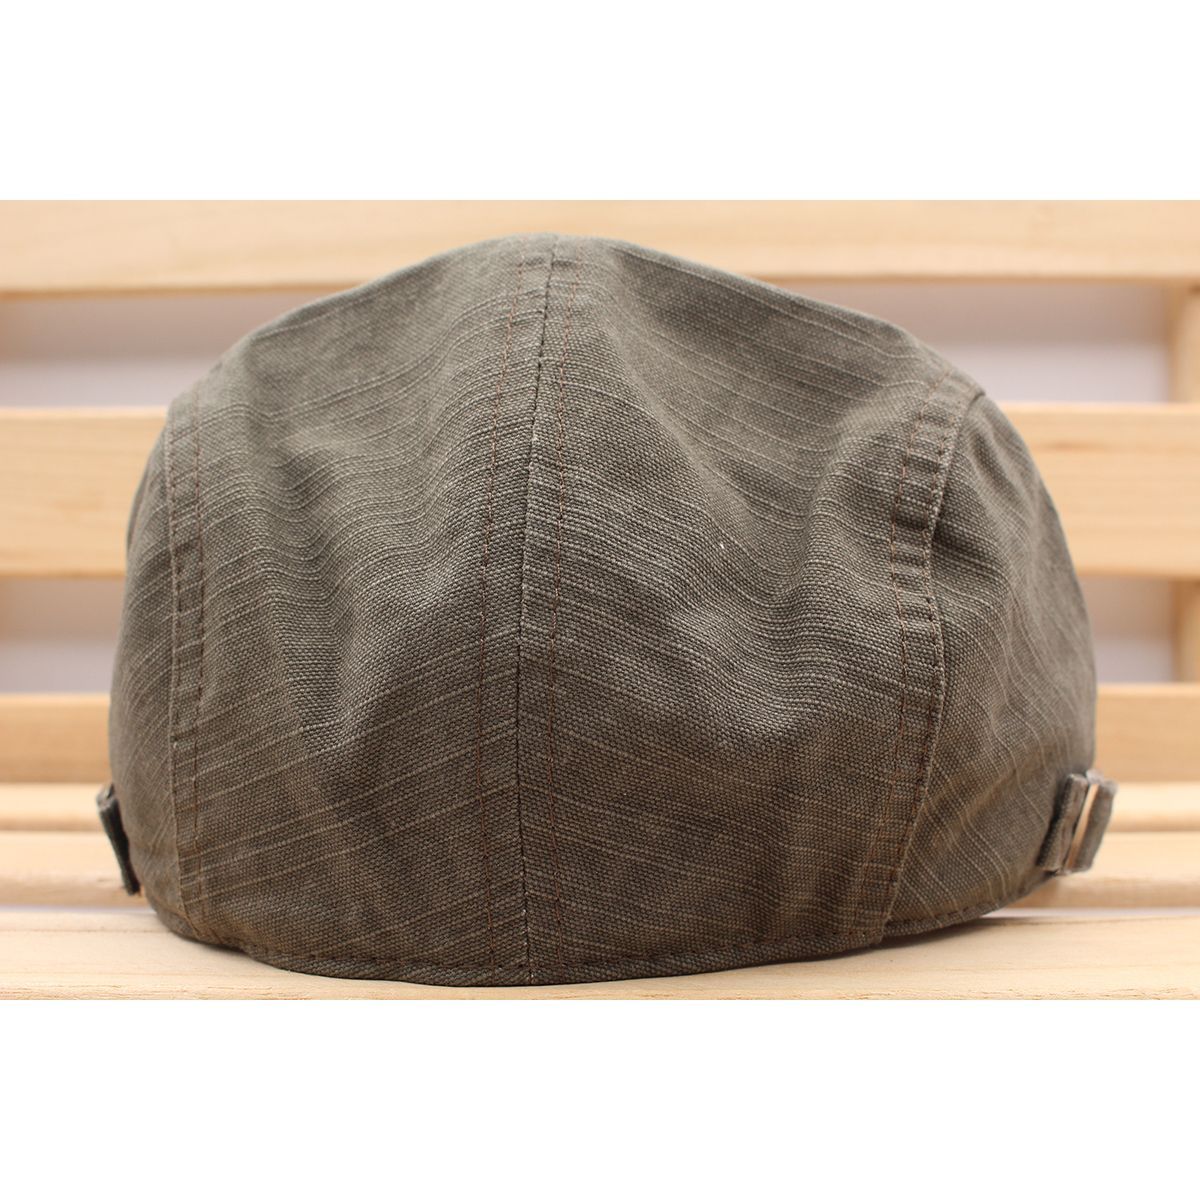 ハンチング帽子 シンプル刺繍 綿 帽子 キャップ 56cm~59cm メンズ レディース オリーブ色 新作 HC244-4